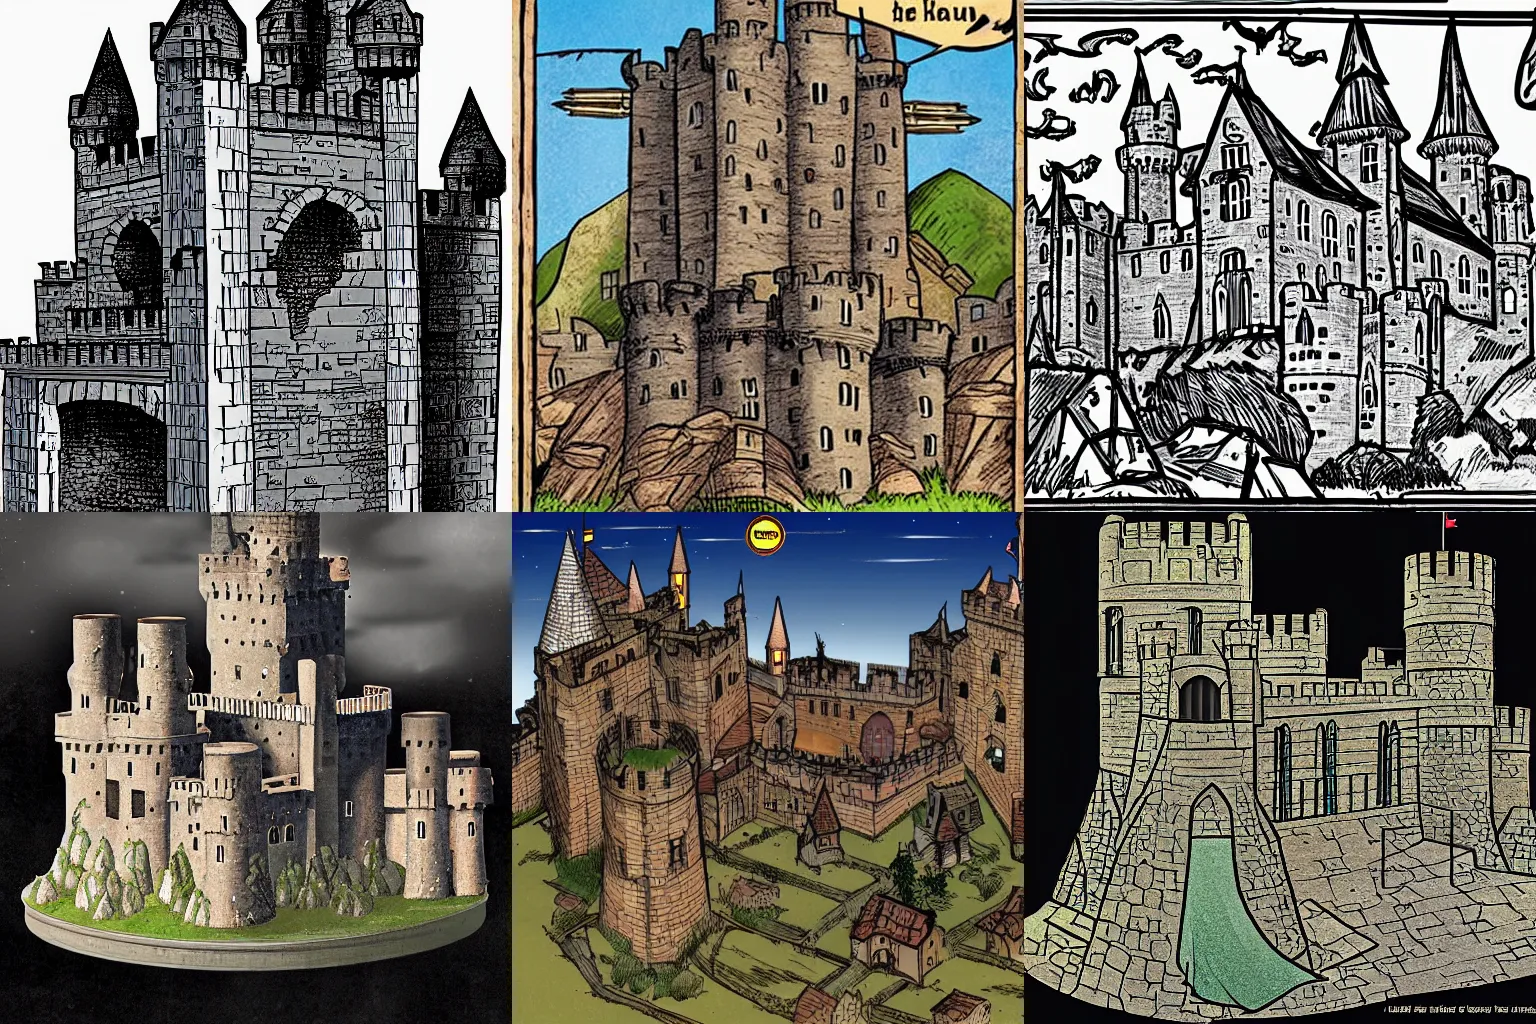 Prompt: medieval castle, by dc comics